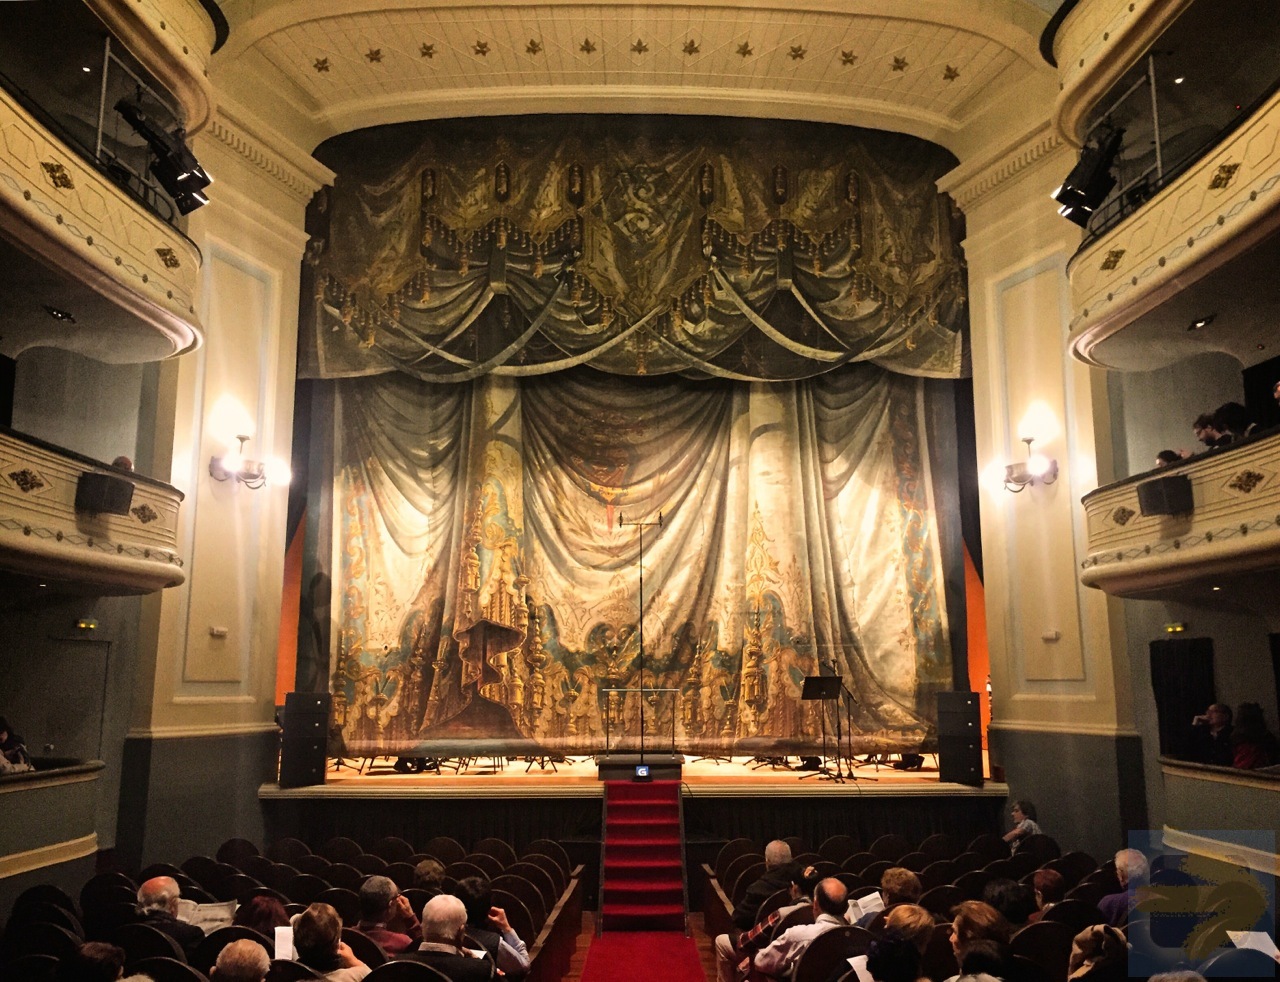 Lovely Teatro Principal on Rua Nova. Santiago de Compostela